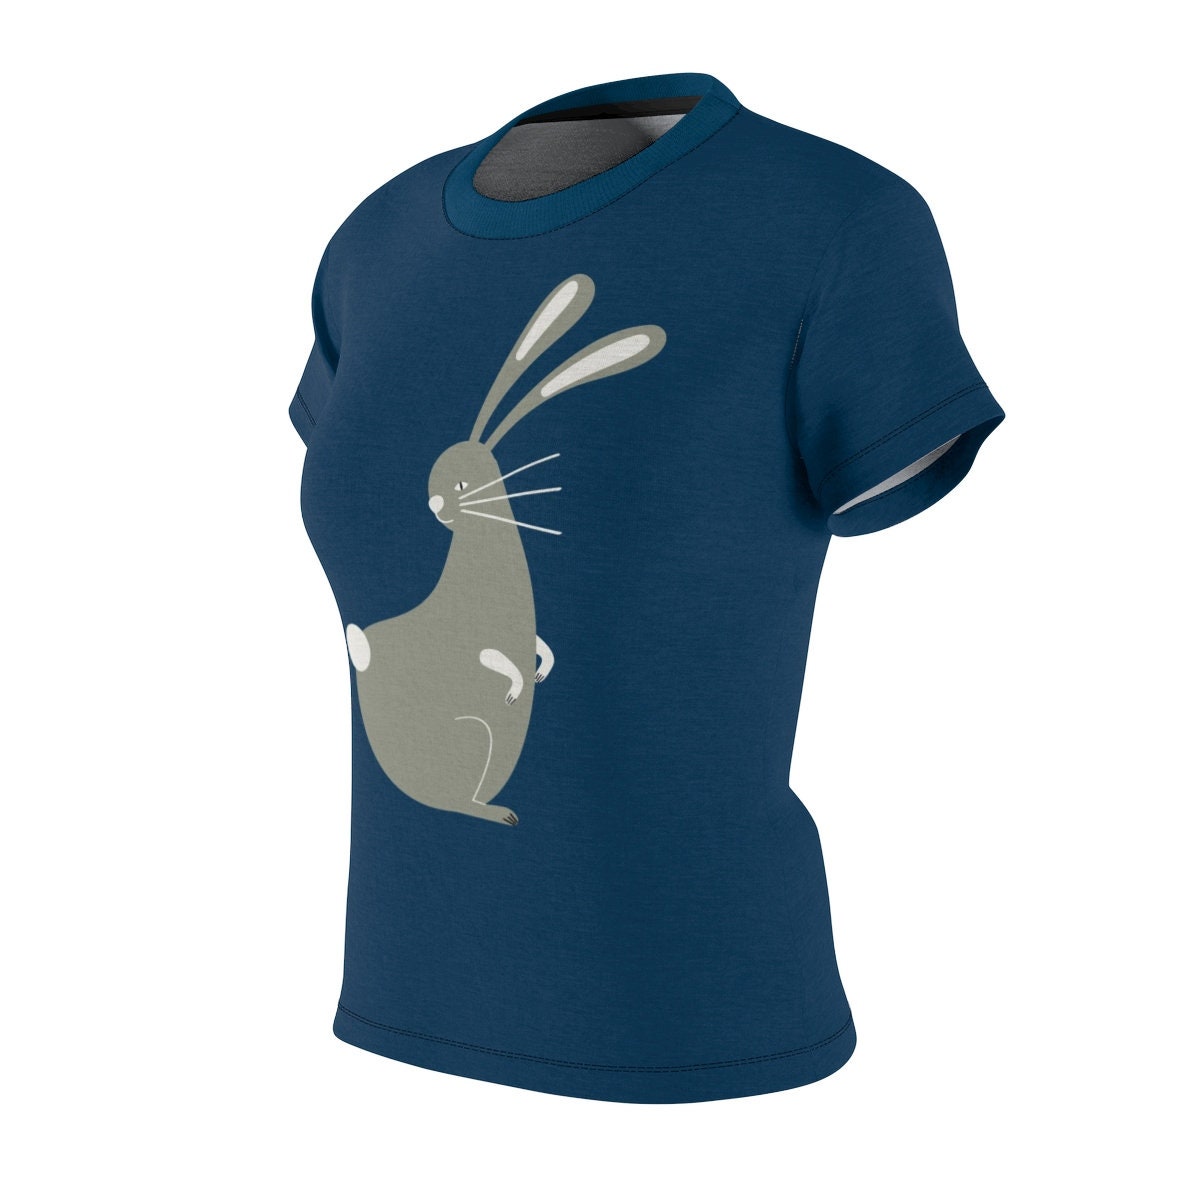 Year of the Rabbit / Astrology / Chinese / Zodiac / T-shirt / Tee / Shirt / Rabbit / Art / Valentine / Birthday / Clothing / Gift for Her - Chloe Lambertin